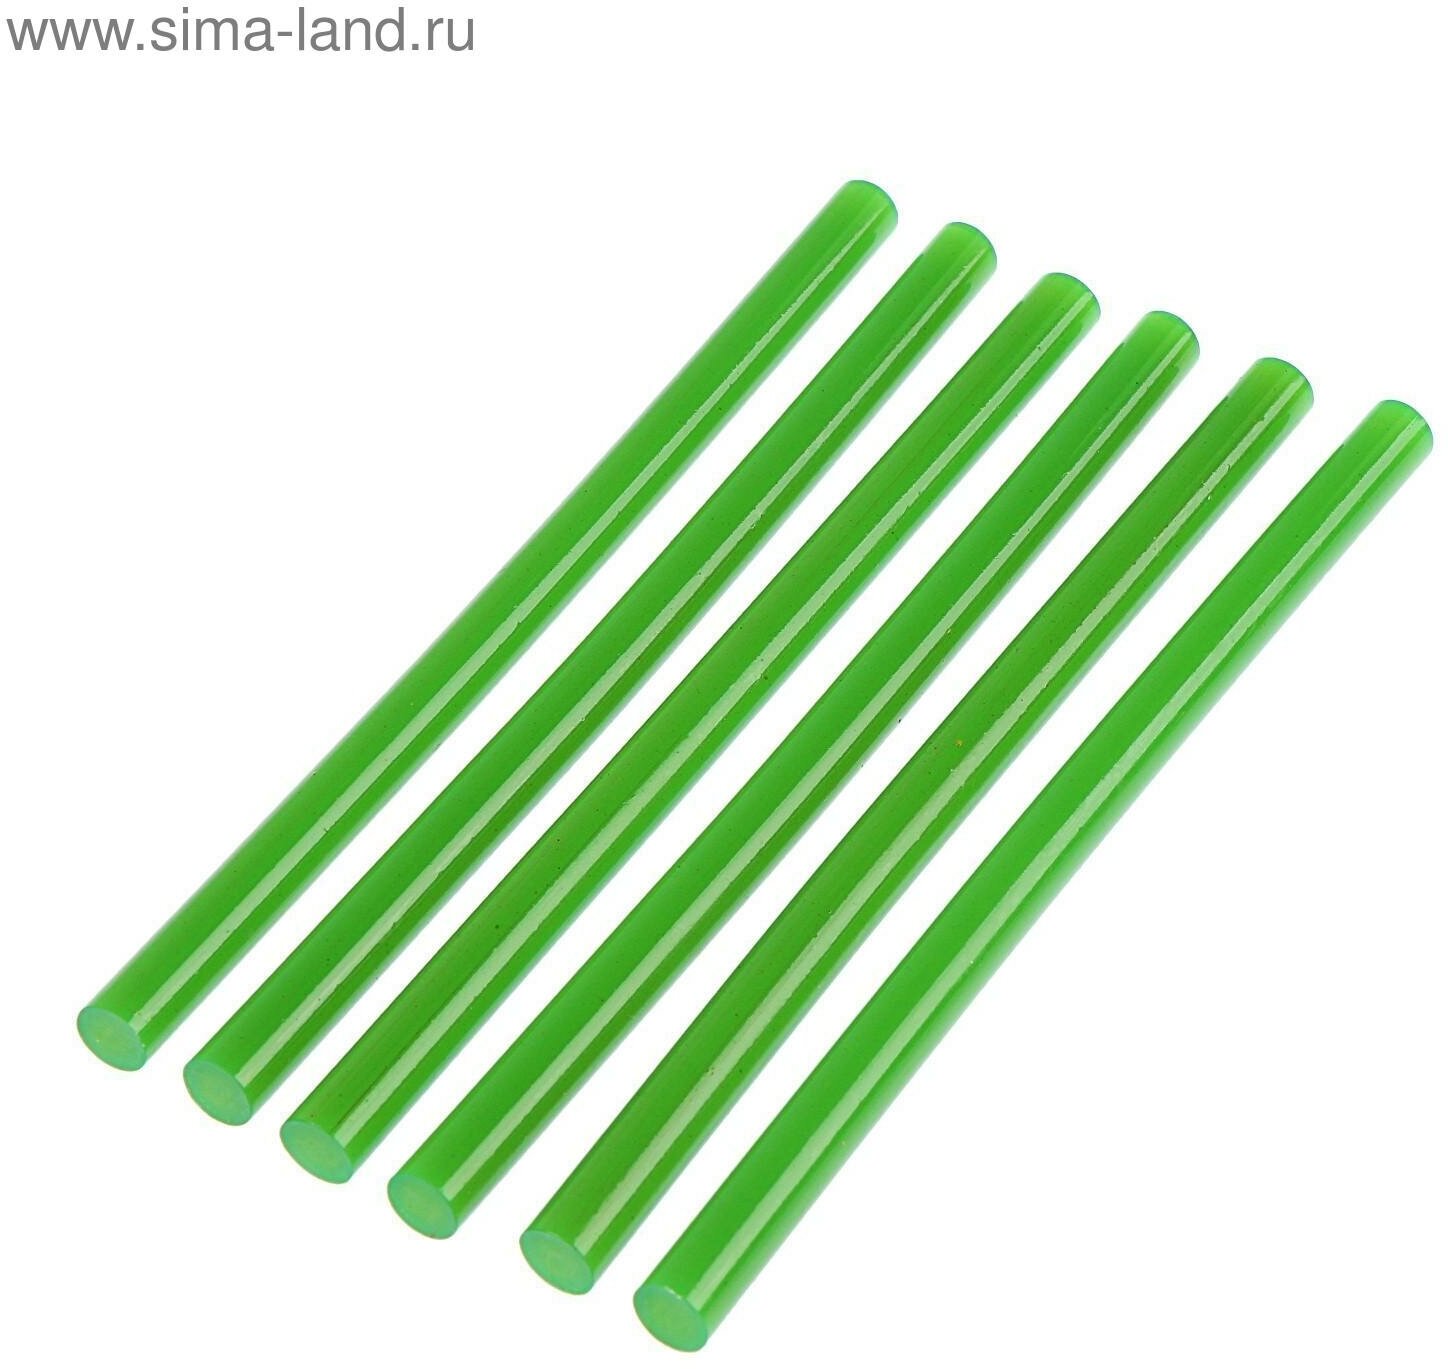 Клеевые стержни тундра, 11 х 200 мм, зеленые, 6 шт.